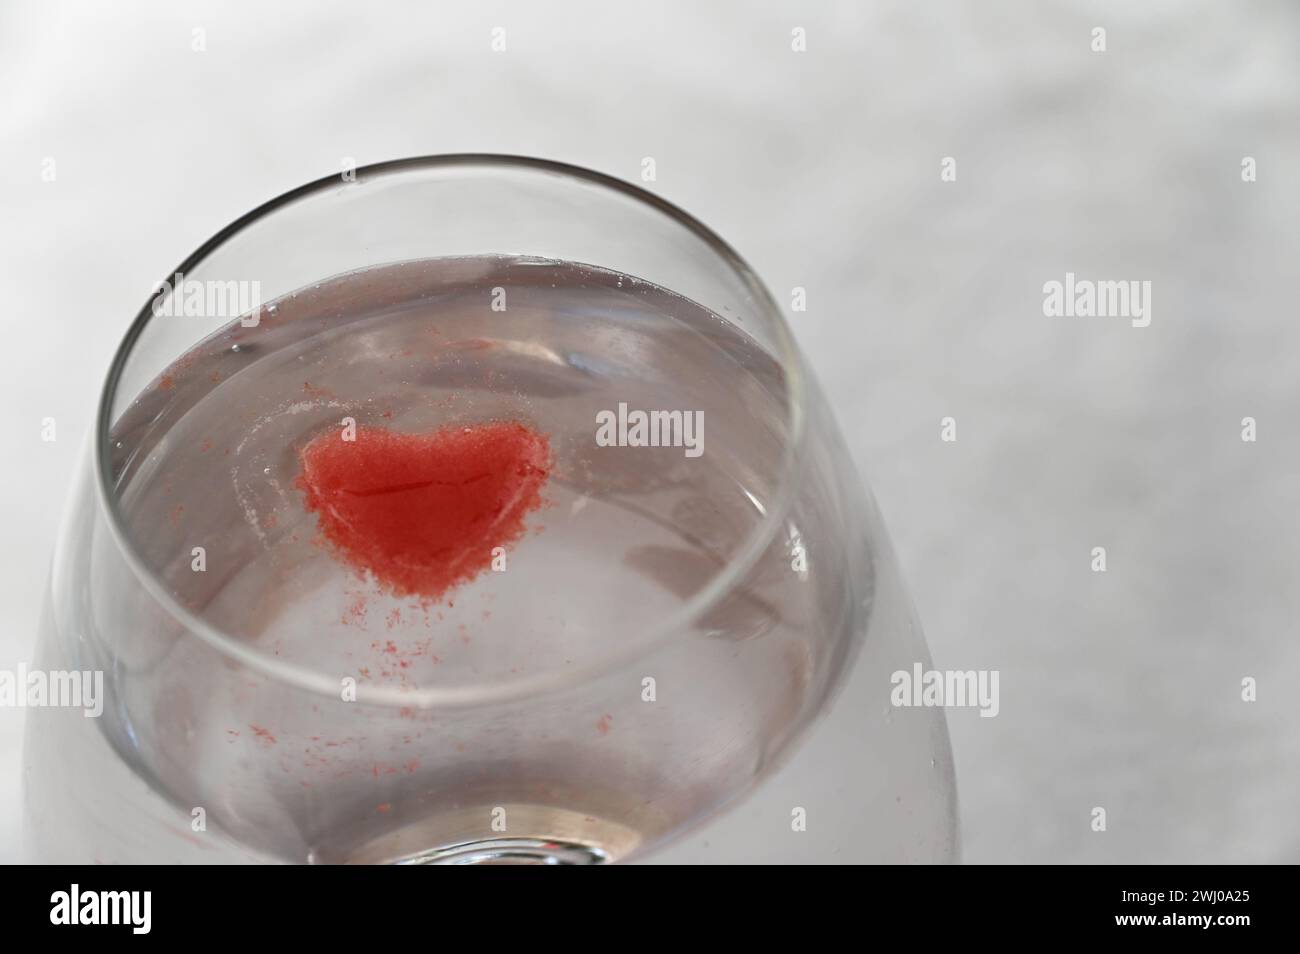 Un vaso está lleno de un líquido claro y un cubo de hielo rojo brillante en forma de corazón que flota en él Foto de stock